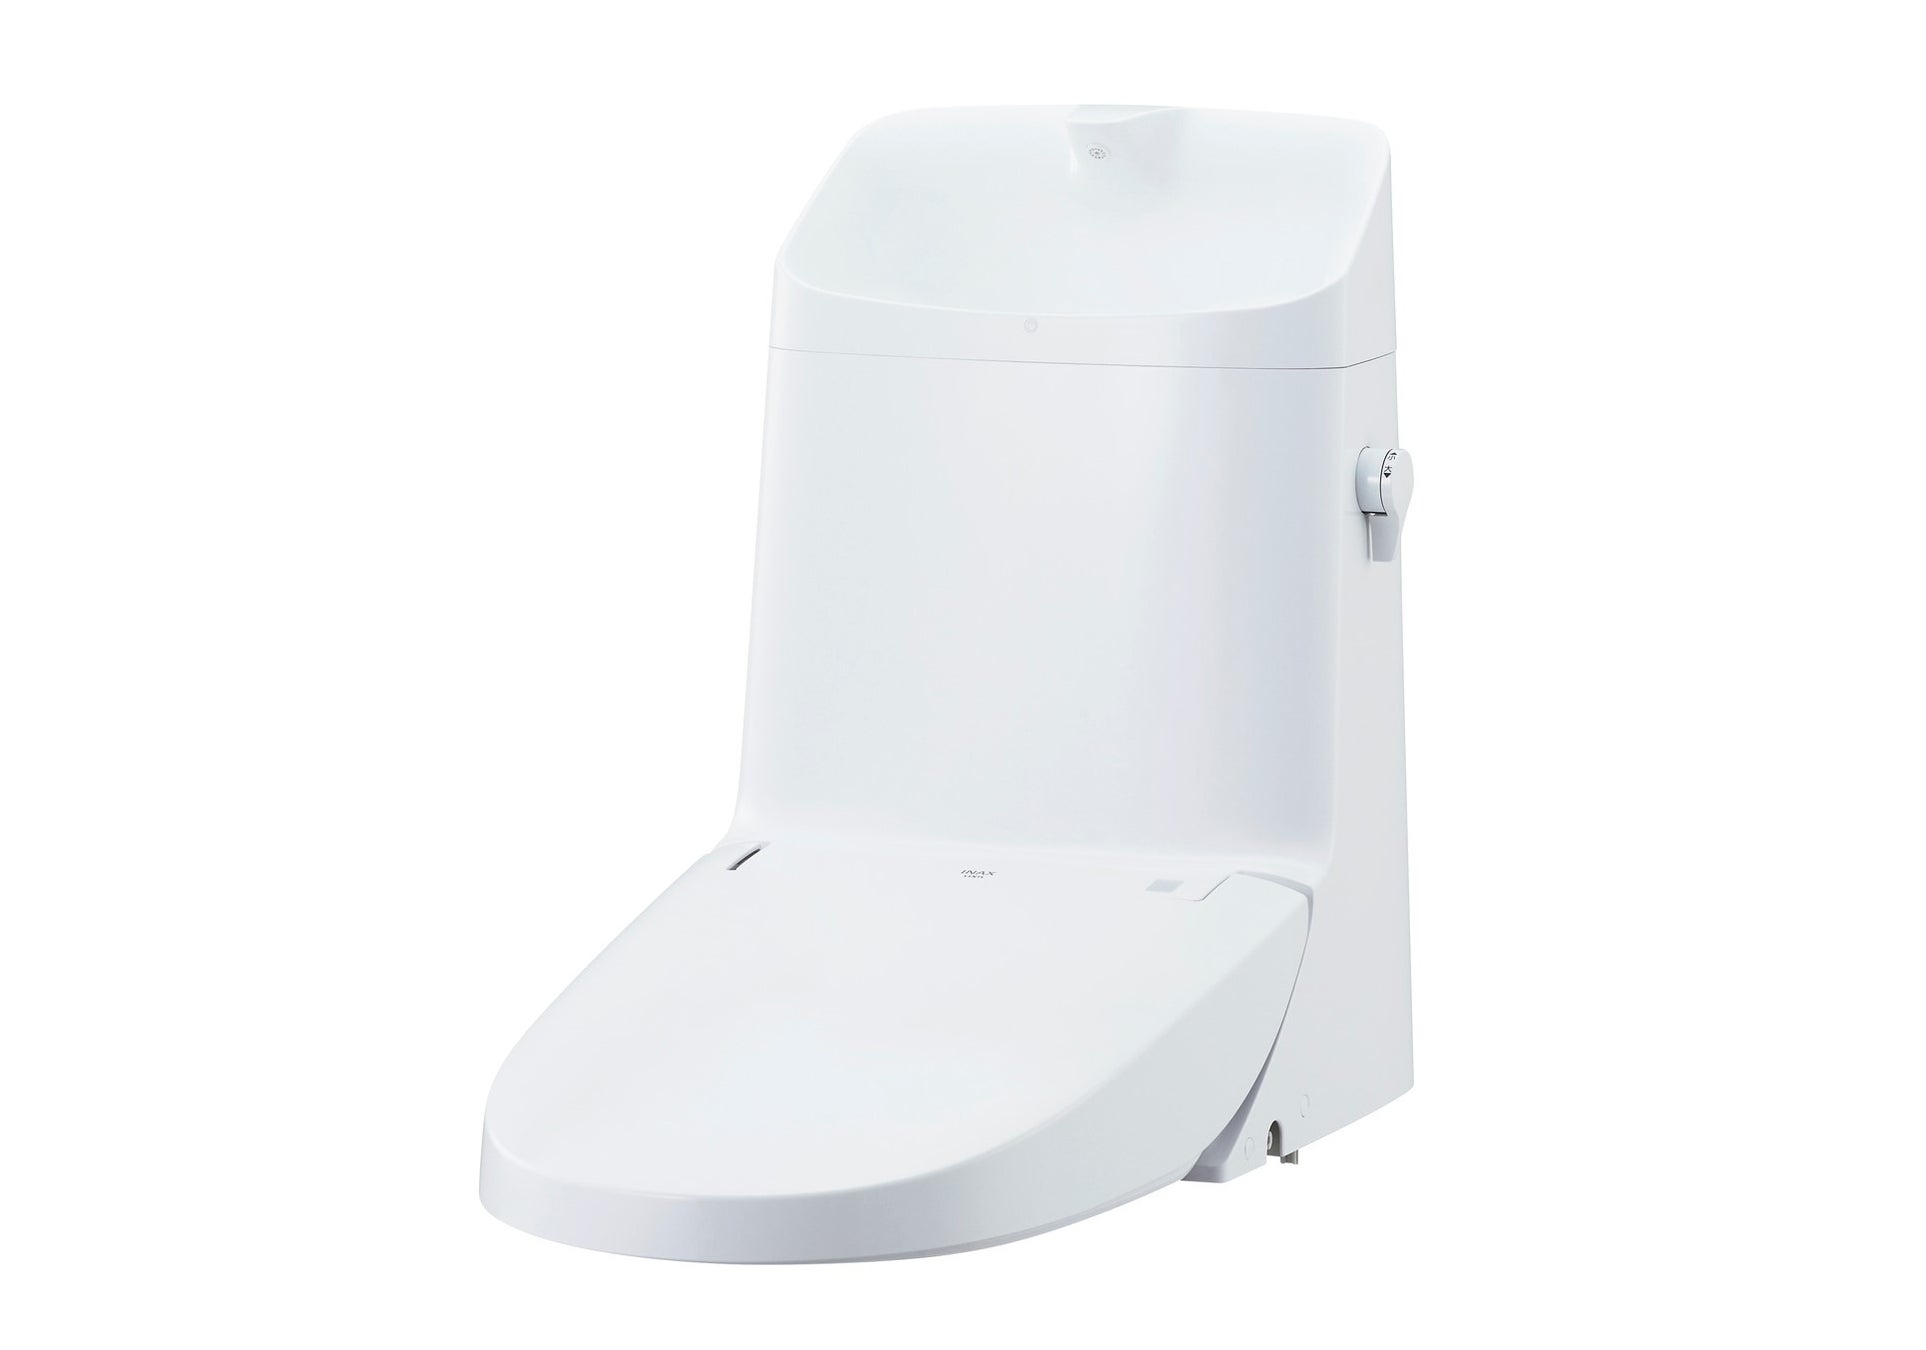 便器一体型シャワートイレにおいて、便器部は残したままシャワートイレ部だけの交換が可能な「リフレッシュシャワートイレ」新発売のサブ画像4